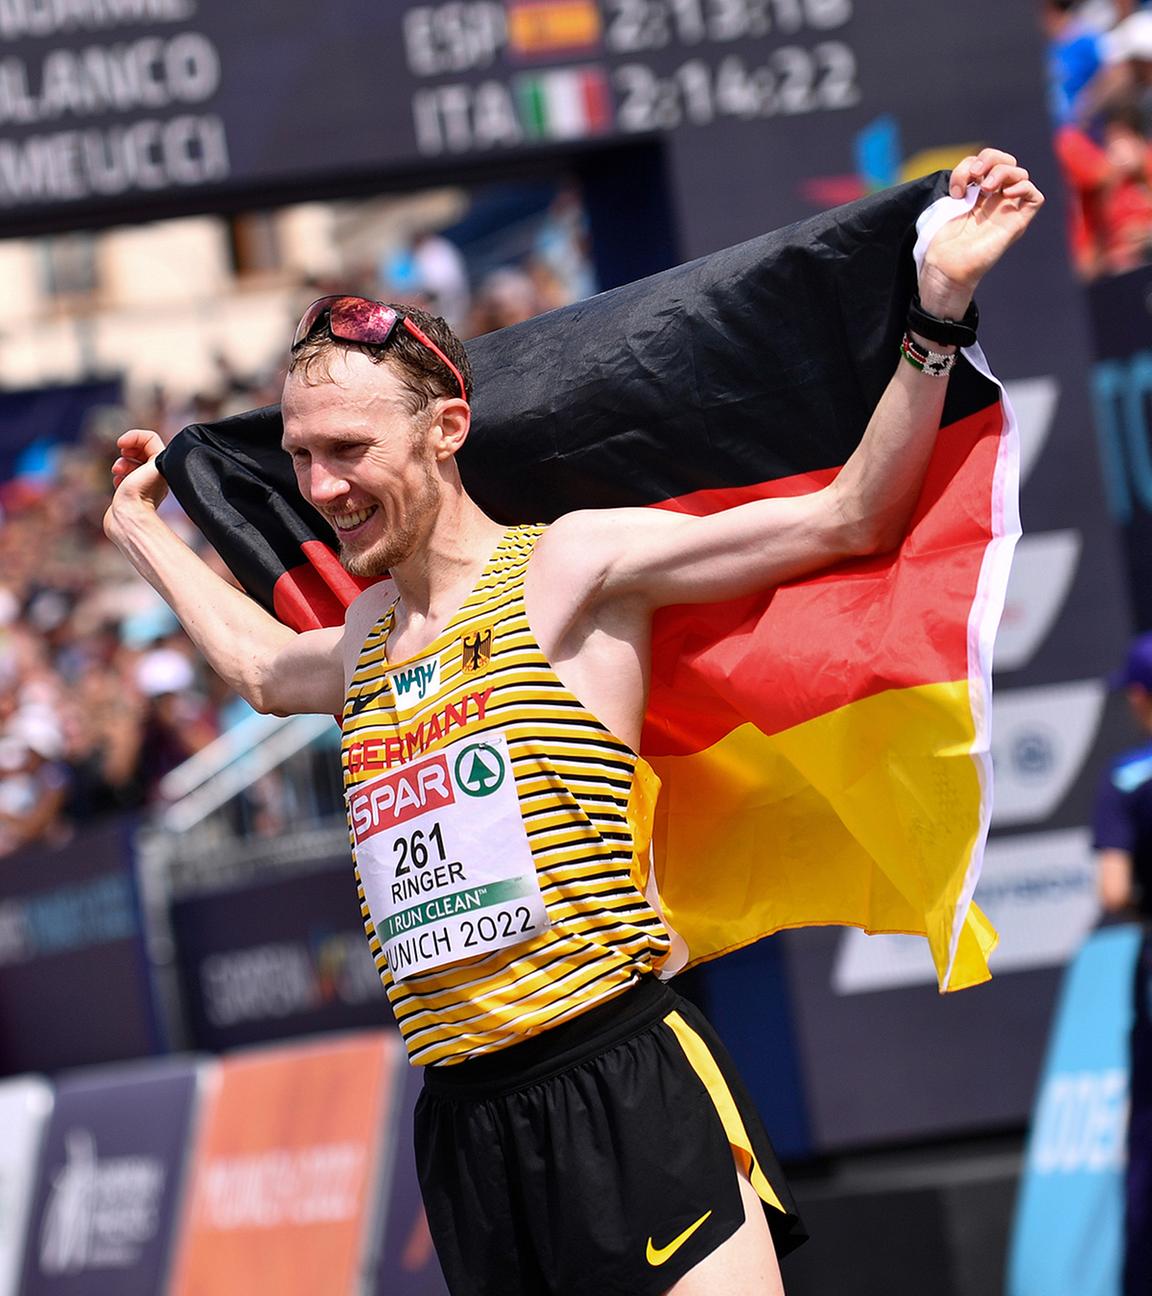 Der deutschen Marathonläufer Richard Ringer gewinnt das Rennen und jubelt nach dem Zieleinlauf.